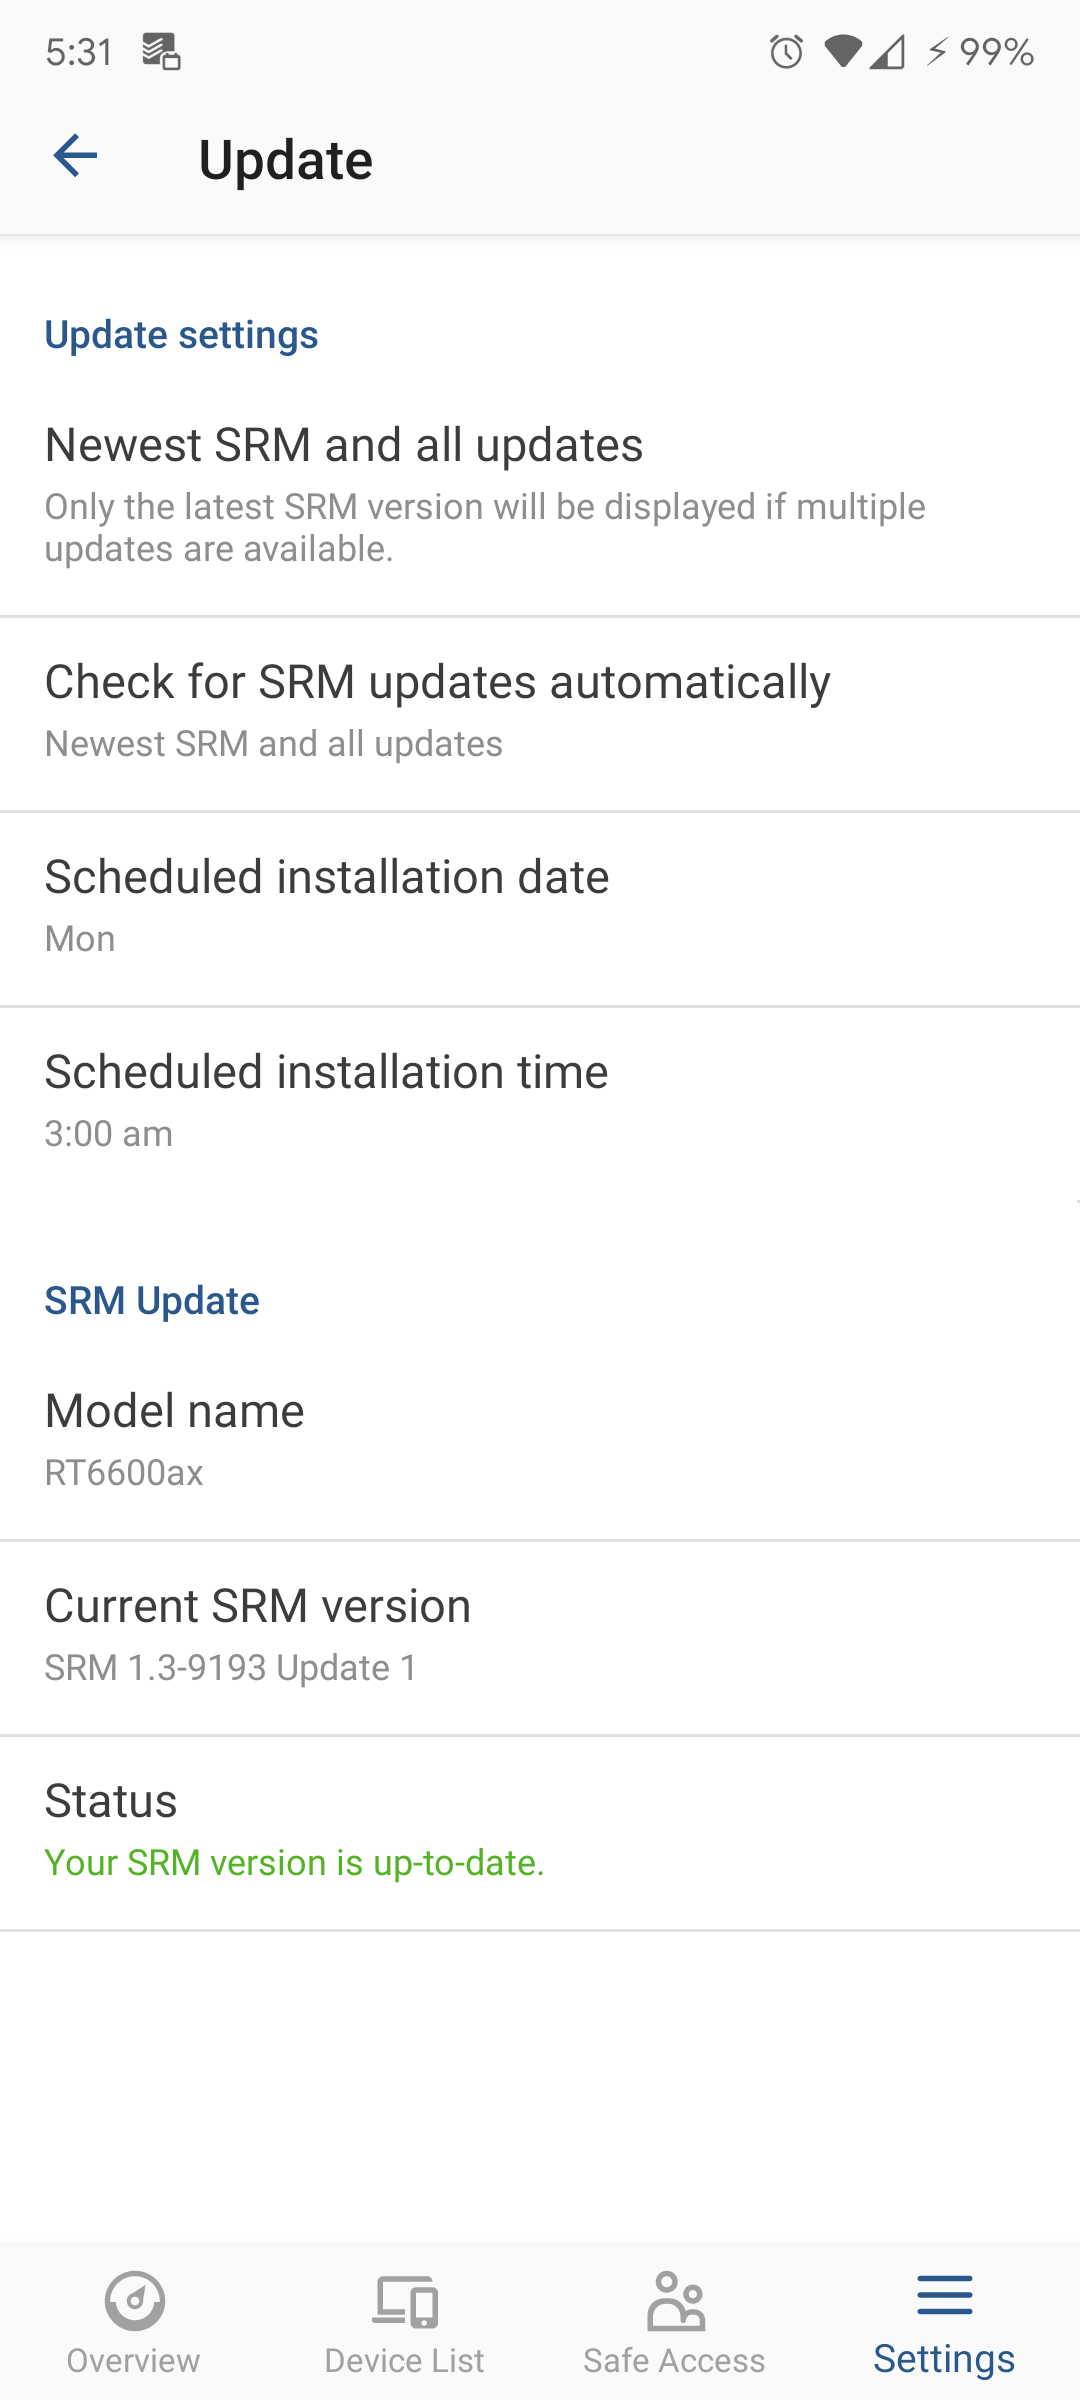 SRM Update